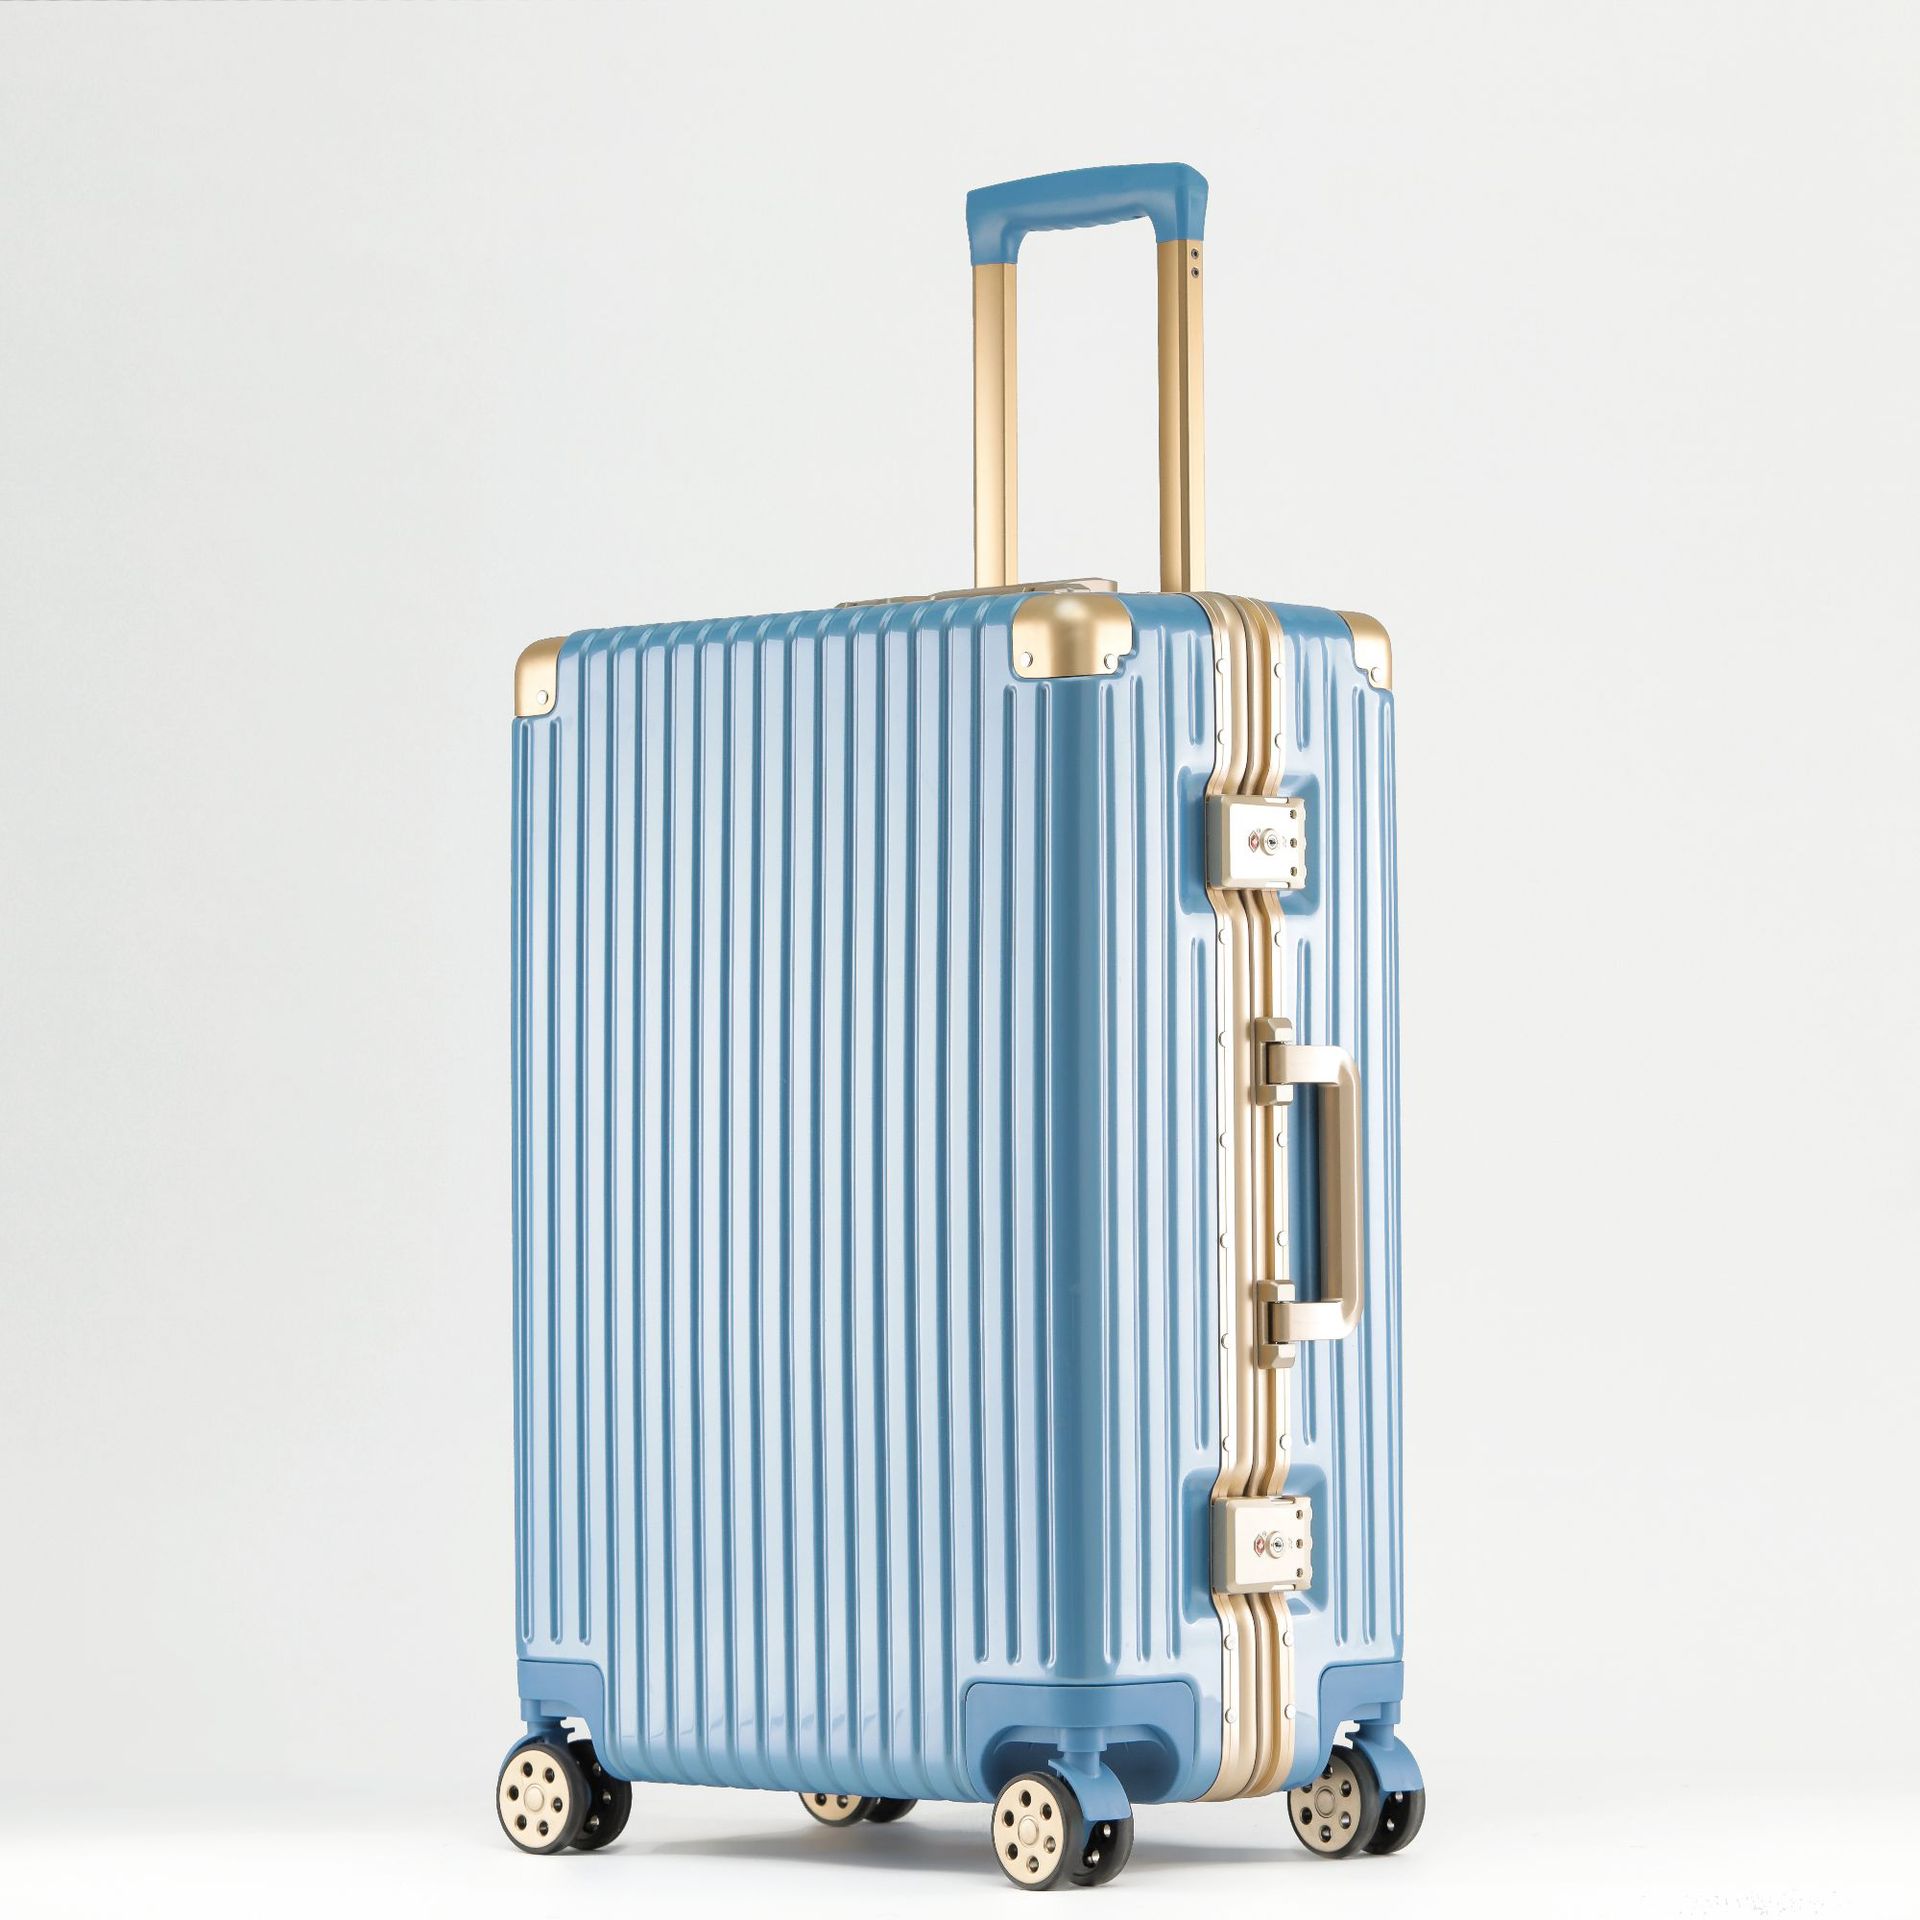 スーツケース 機内持ち込み s mサイズ 軽量 スーツケースカバー付き ハードケース 4日〜6泊 T...